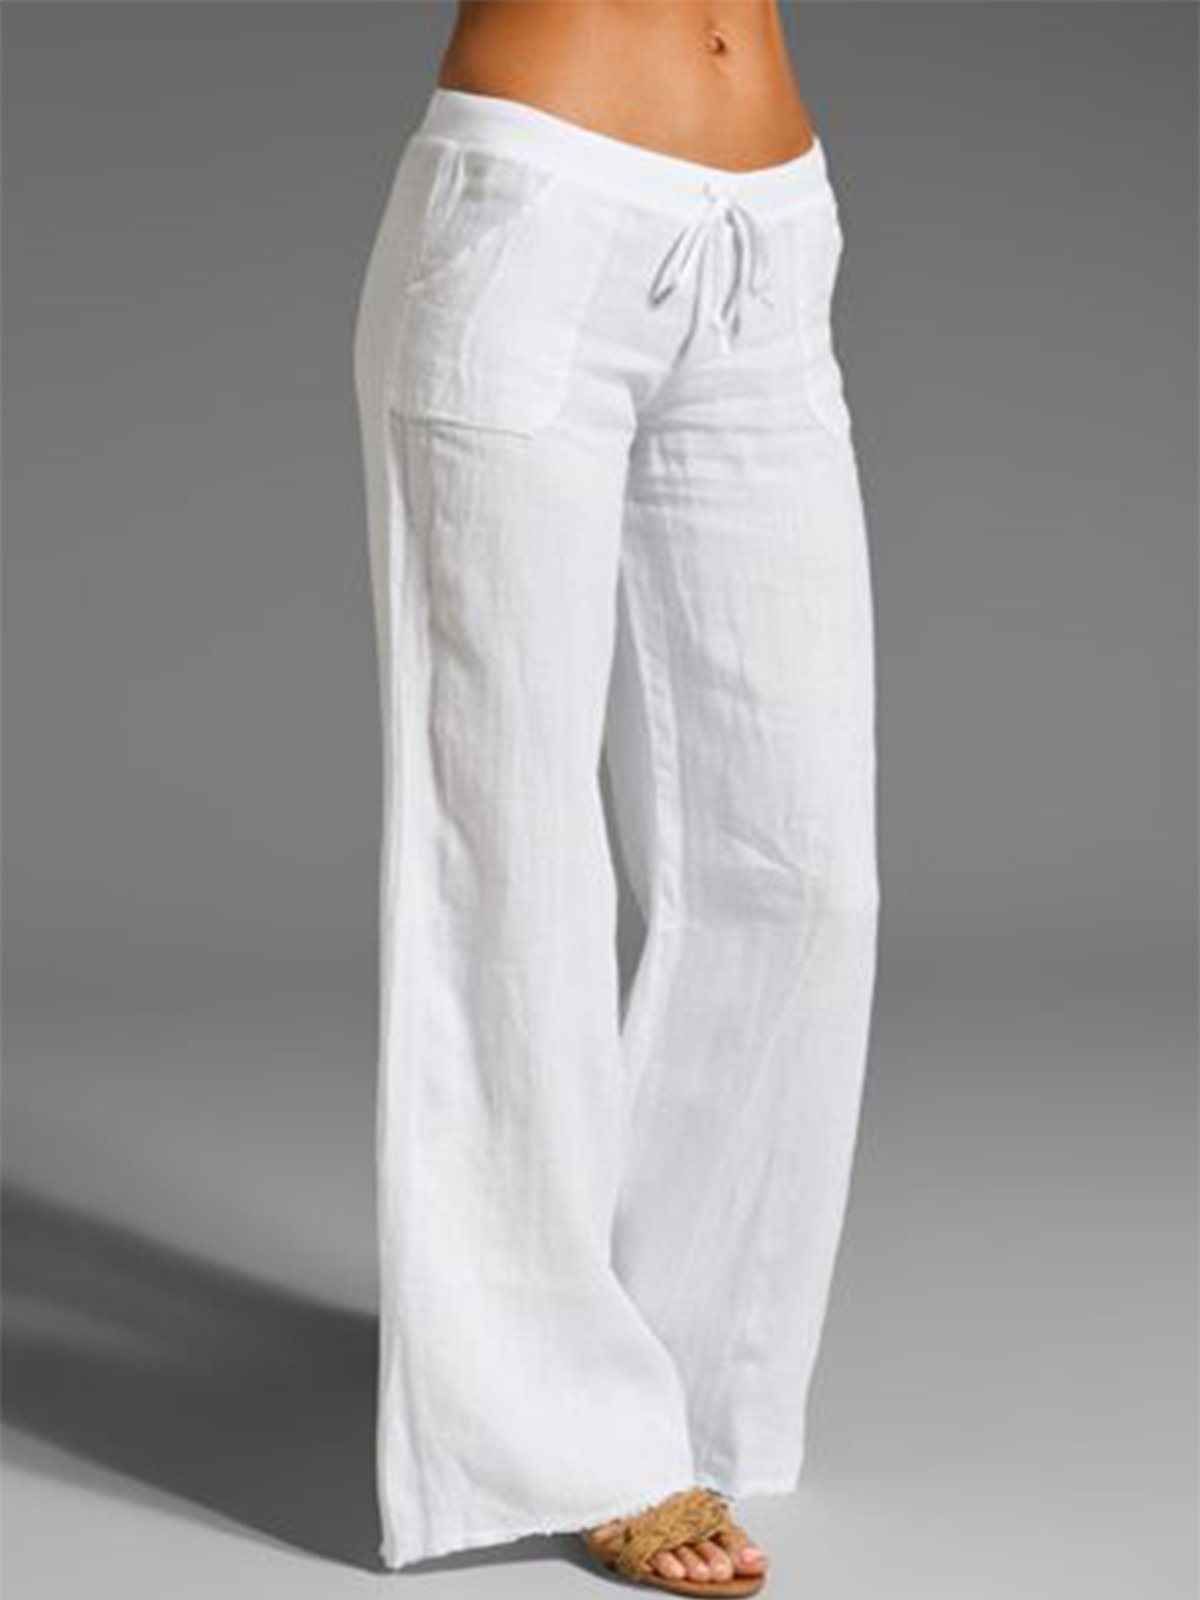 Women's Comfy Wide Leg High Waist Cotton Linen Pants